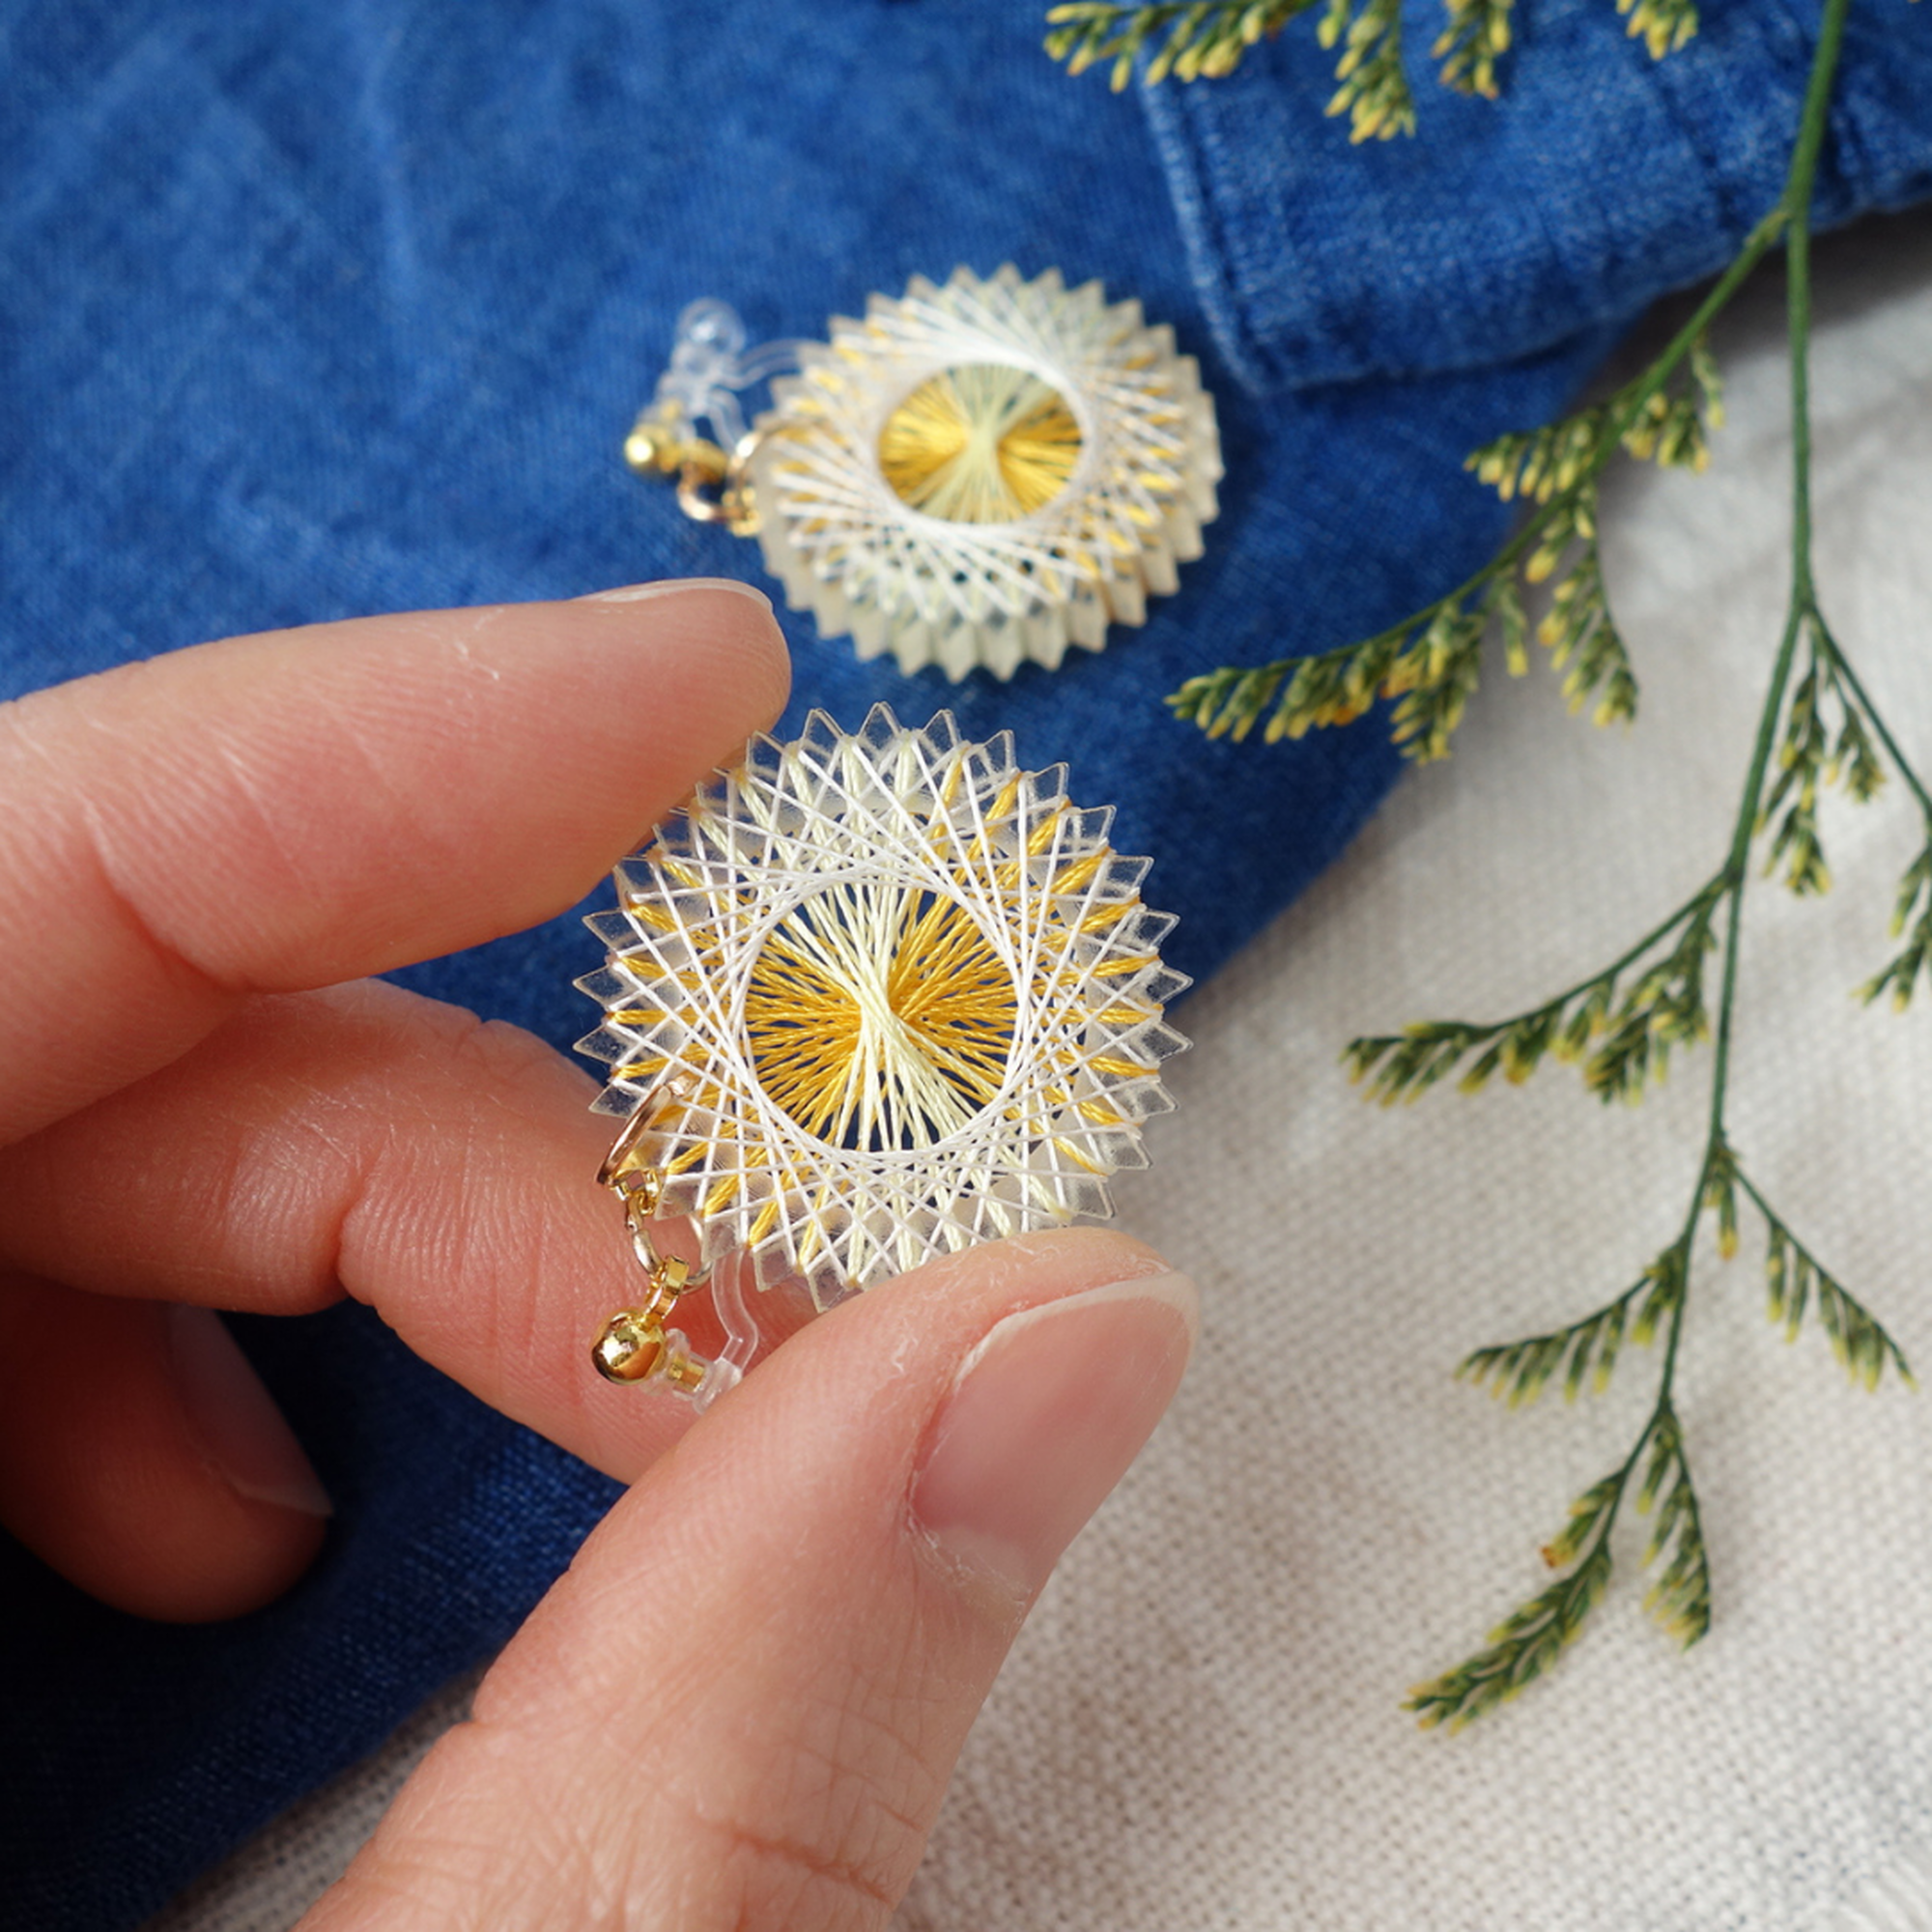 綿毛の季節 絹糸の花咲く小さな 糸まき ピアス ノンホールピアス イヤリング おかもとかも 日本の絹糸で作る糸まきアクセサリー